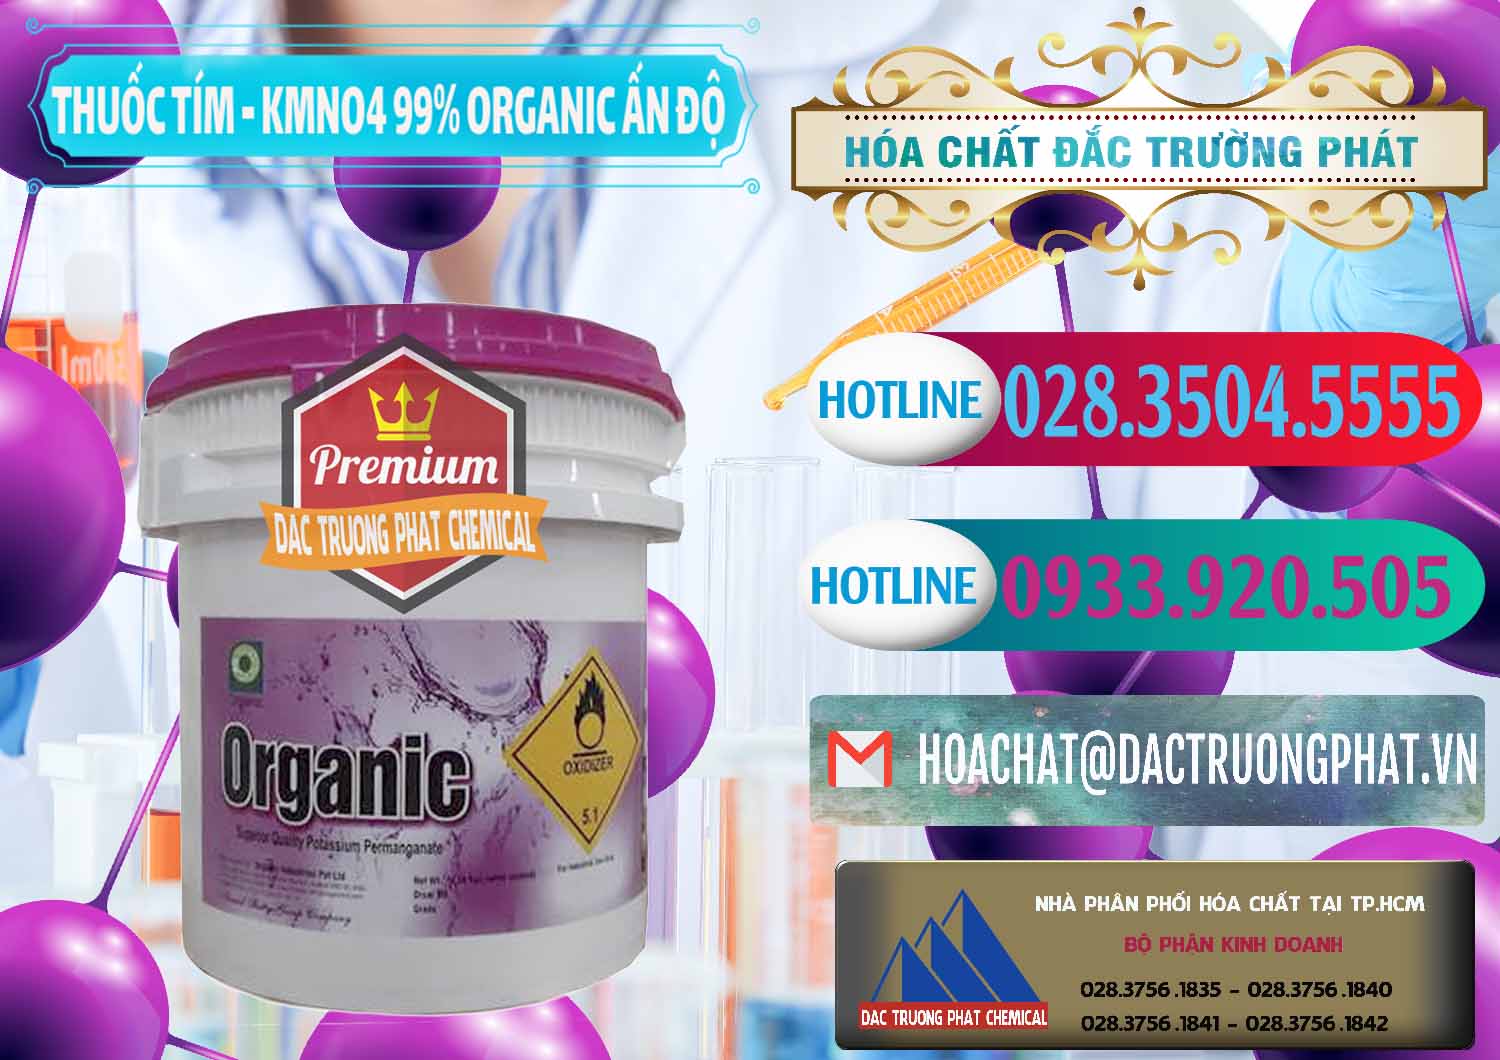 Cty bán ( phân phối ) Thuốc Tím - KMNO4 99% Organic Ấn Độ India - 0216 - Chuyên cung cấp _ phân phối hóa chất tại TP.HCM - truongphat.vn